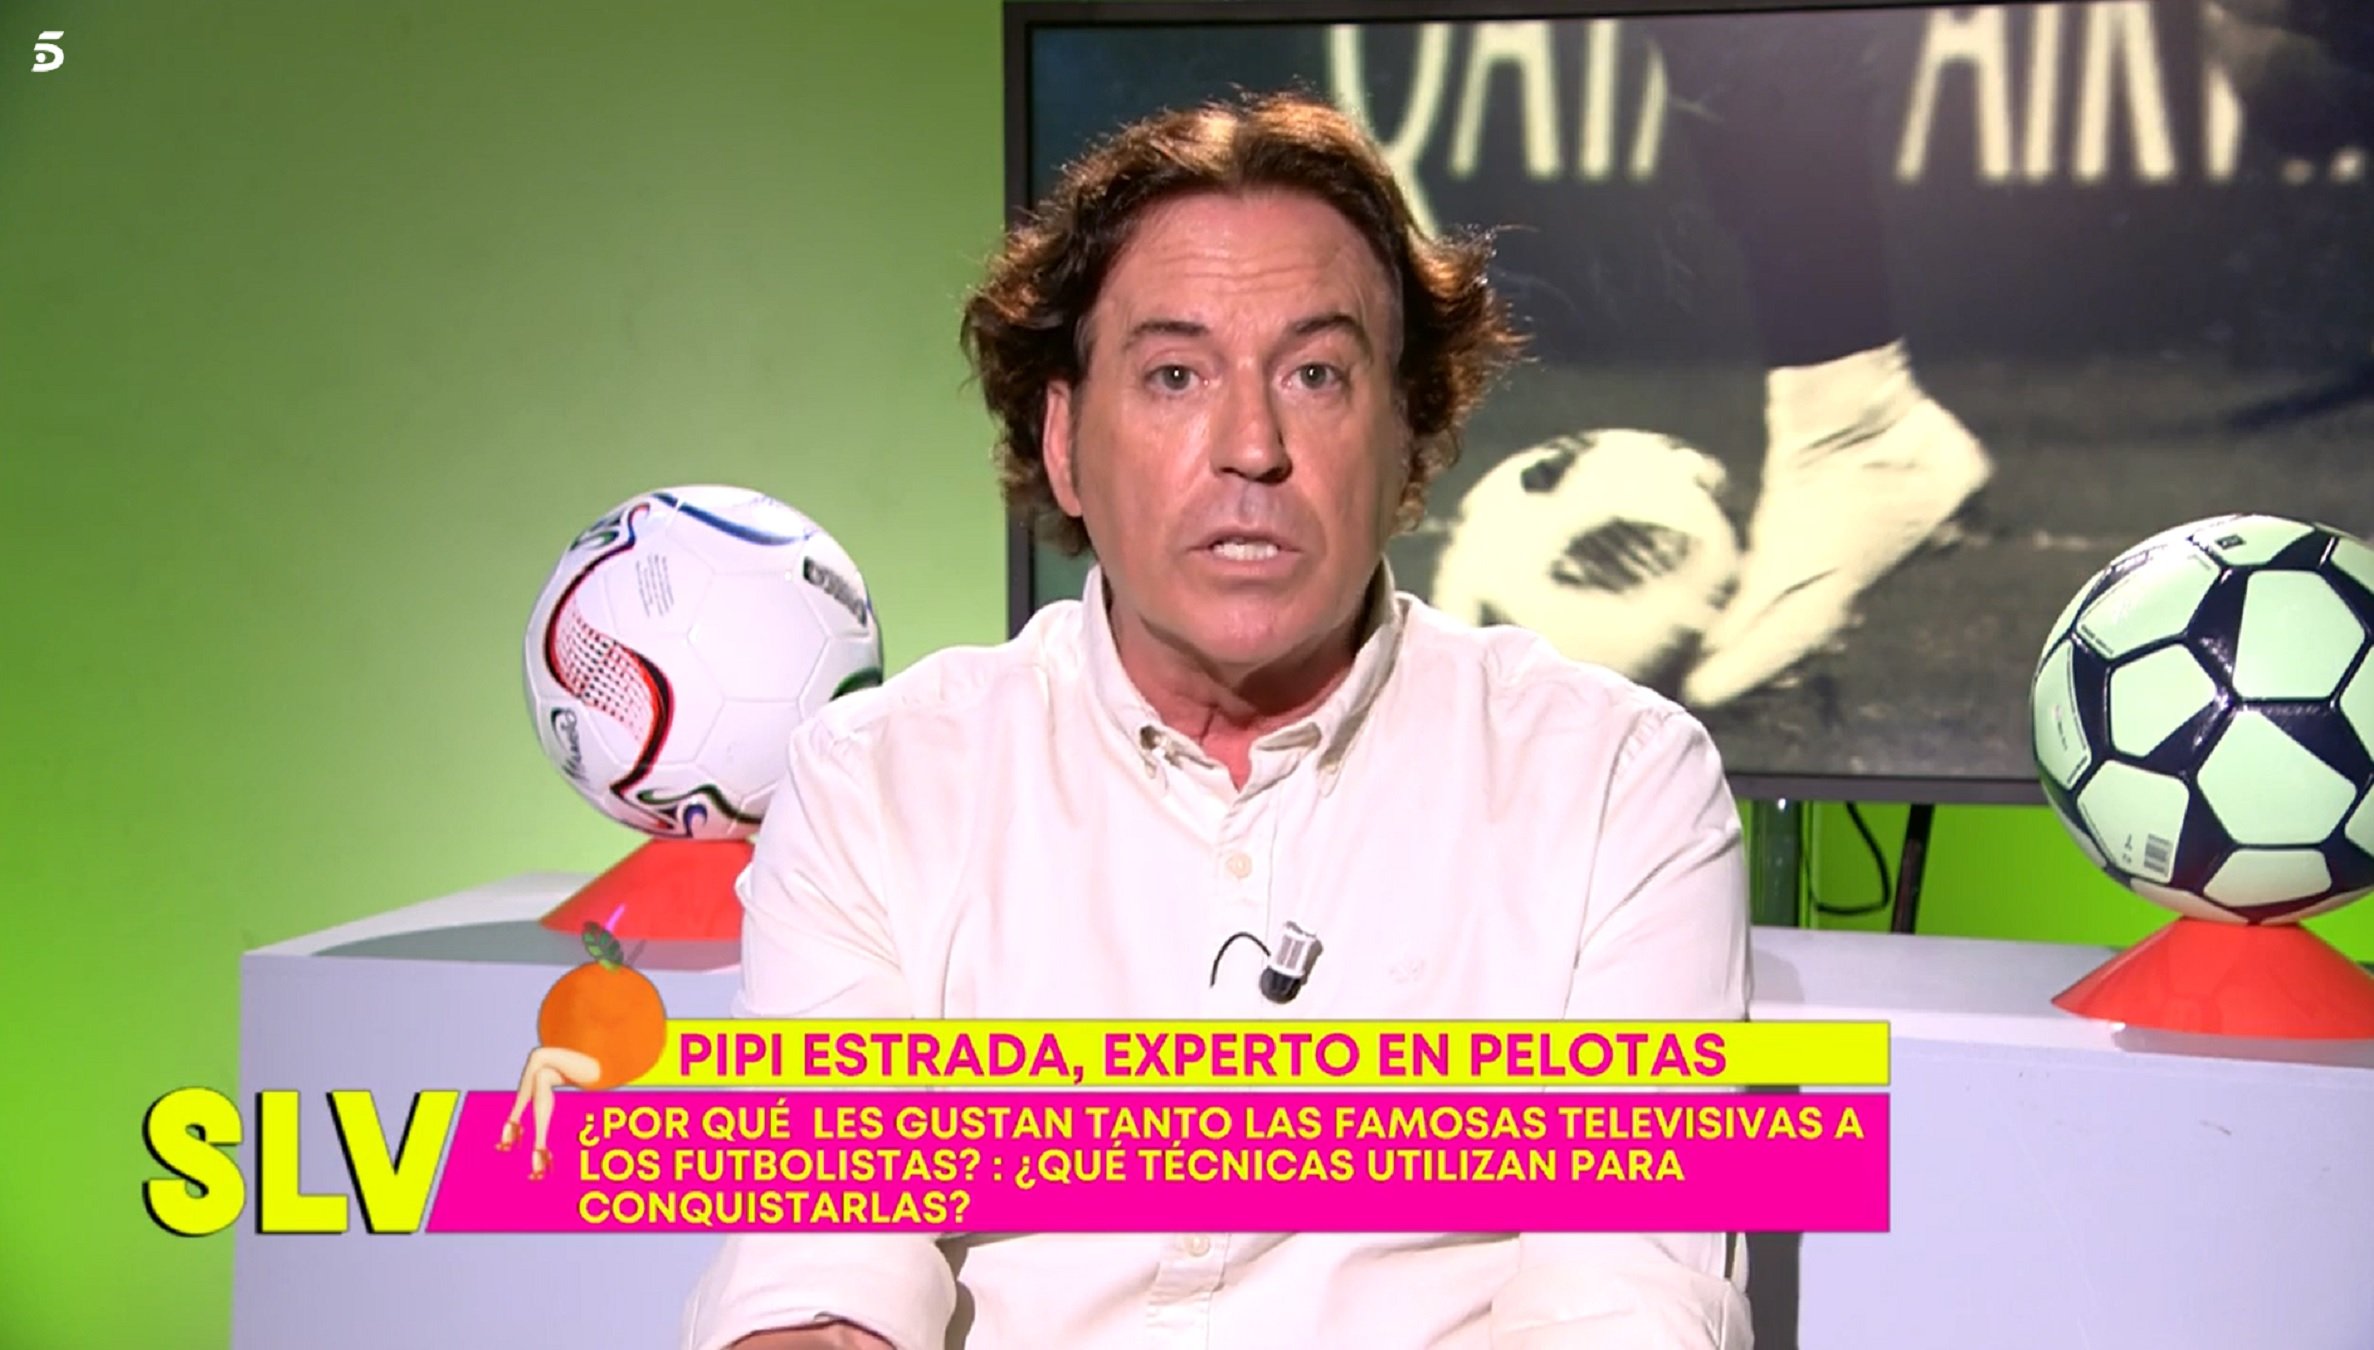 Pipi Estrada posa verds els futbolistes: "Van molt catxondos i no donen la cara"